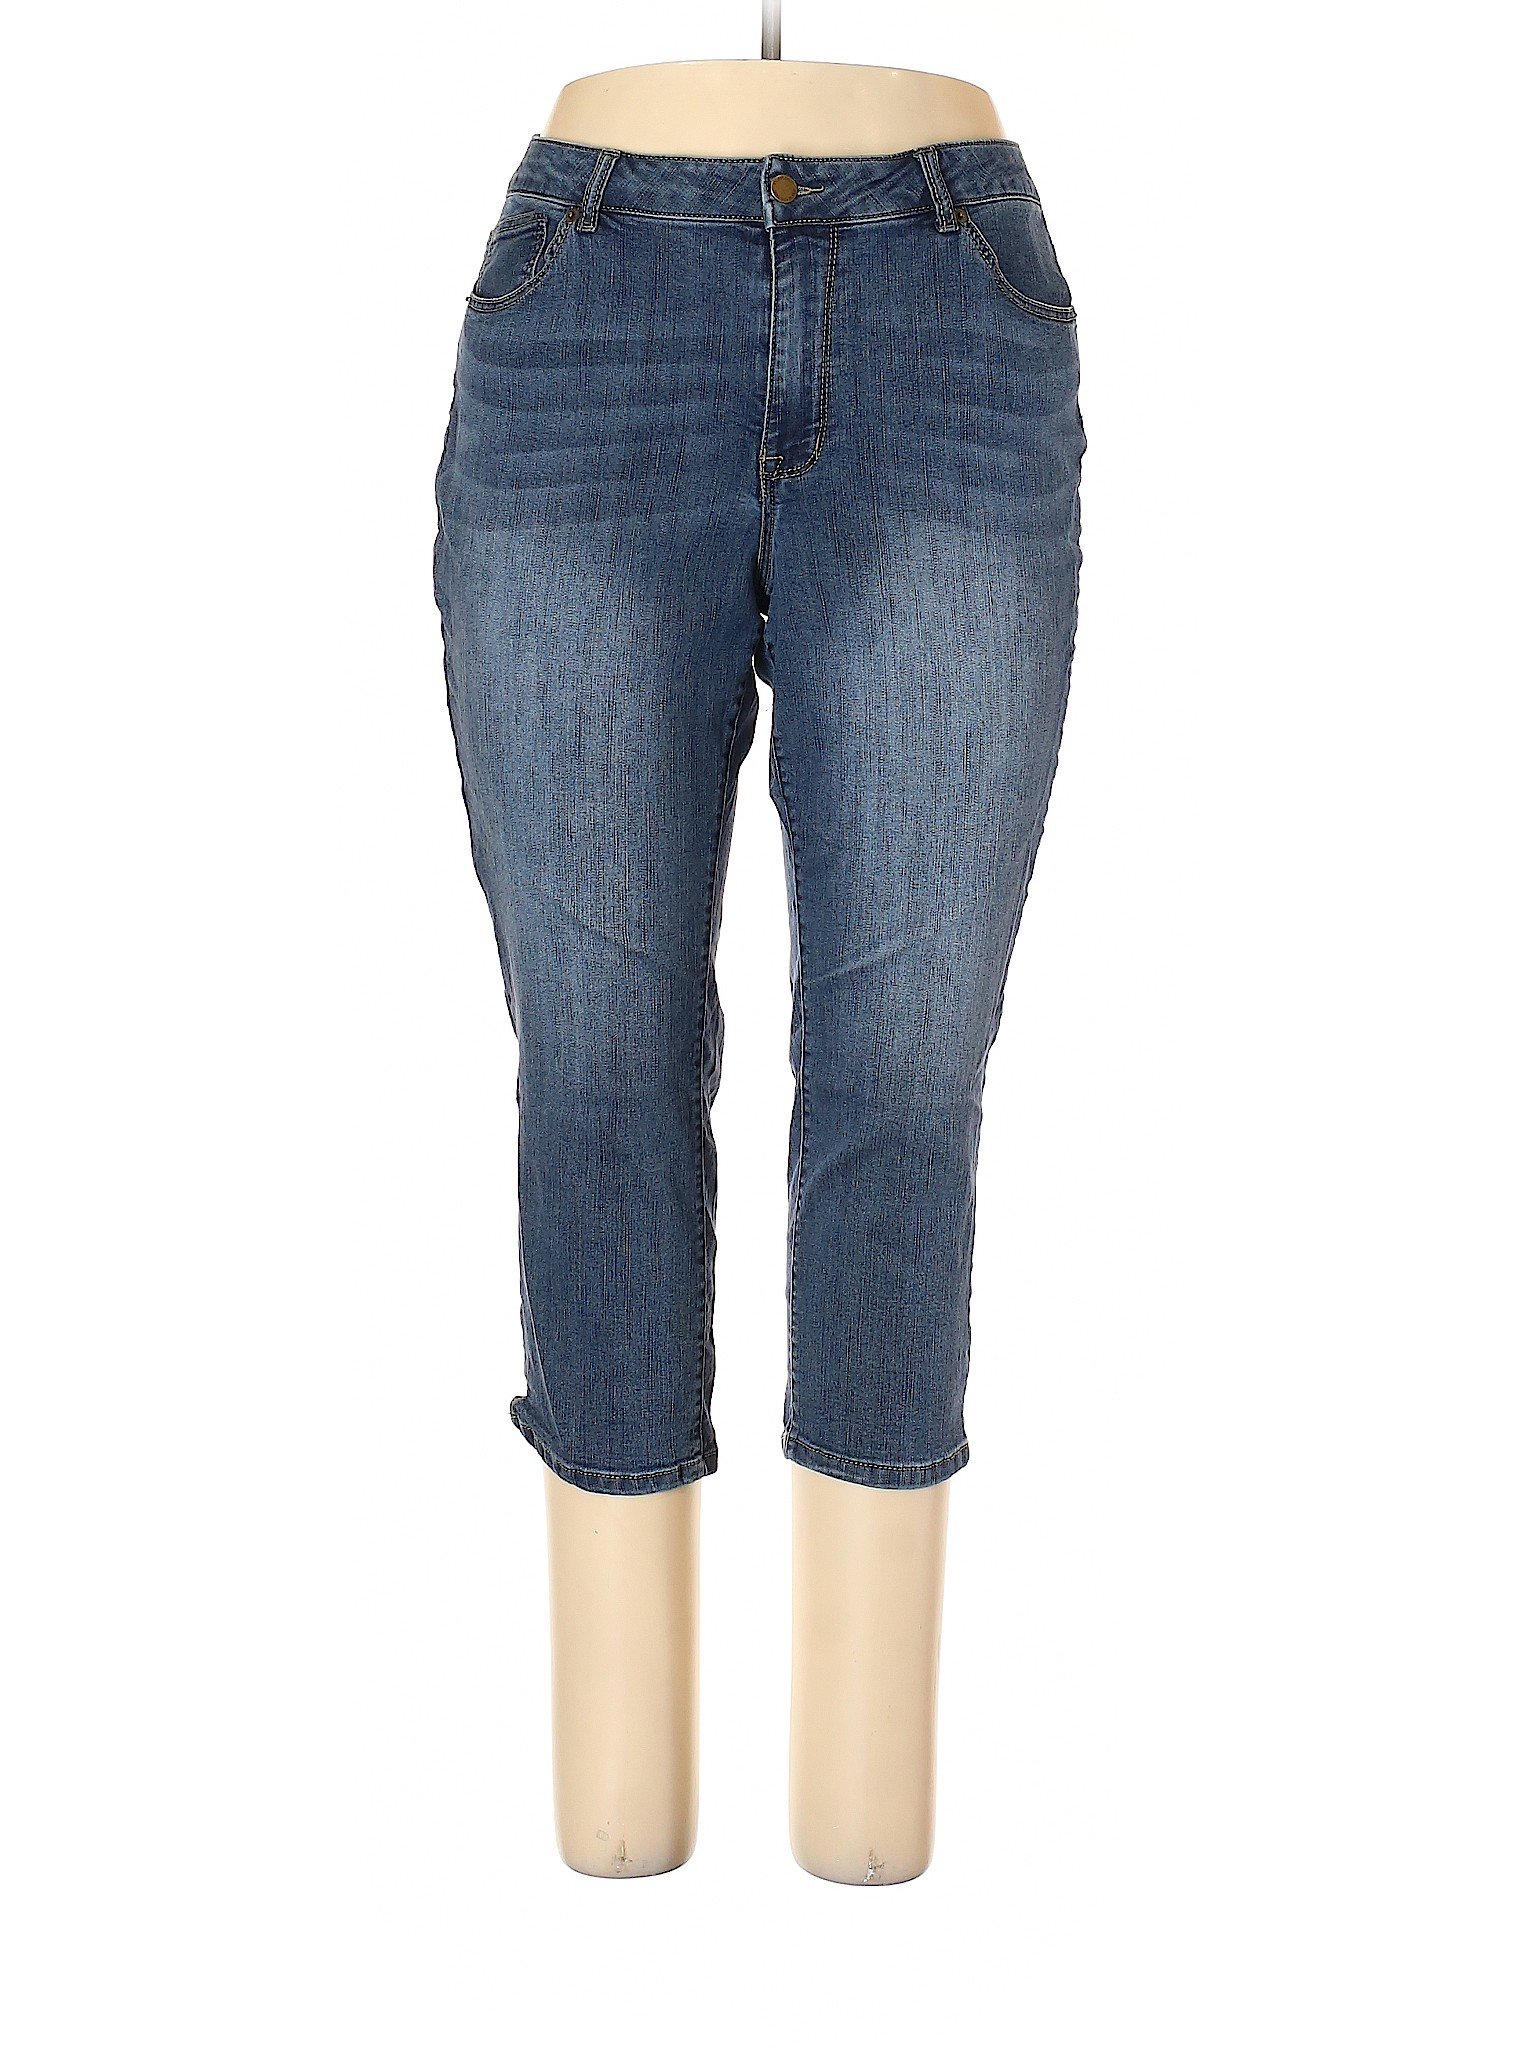 Westport Solid Blue Jeans Size 16 - 70% off | thredUP